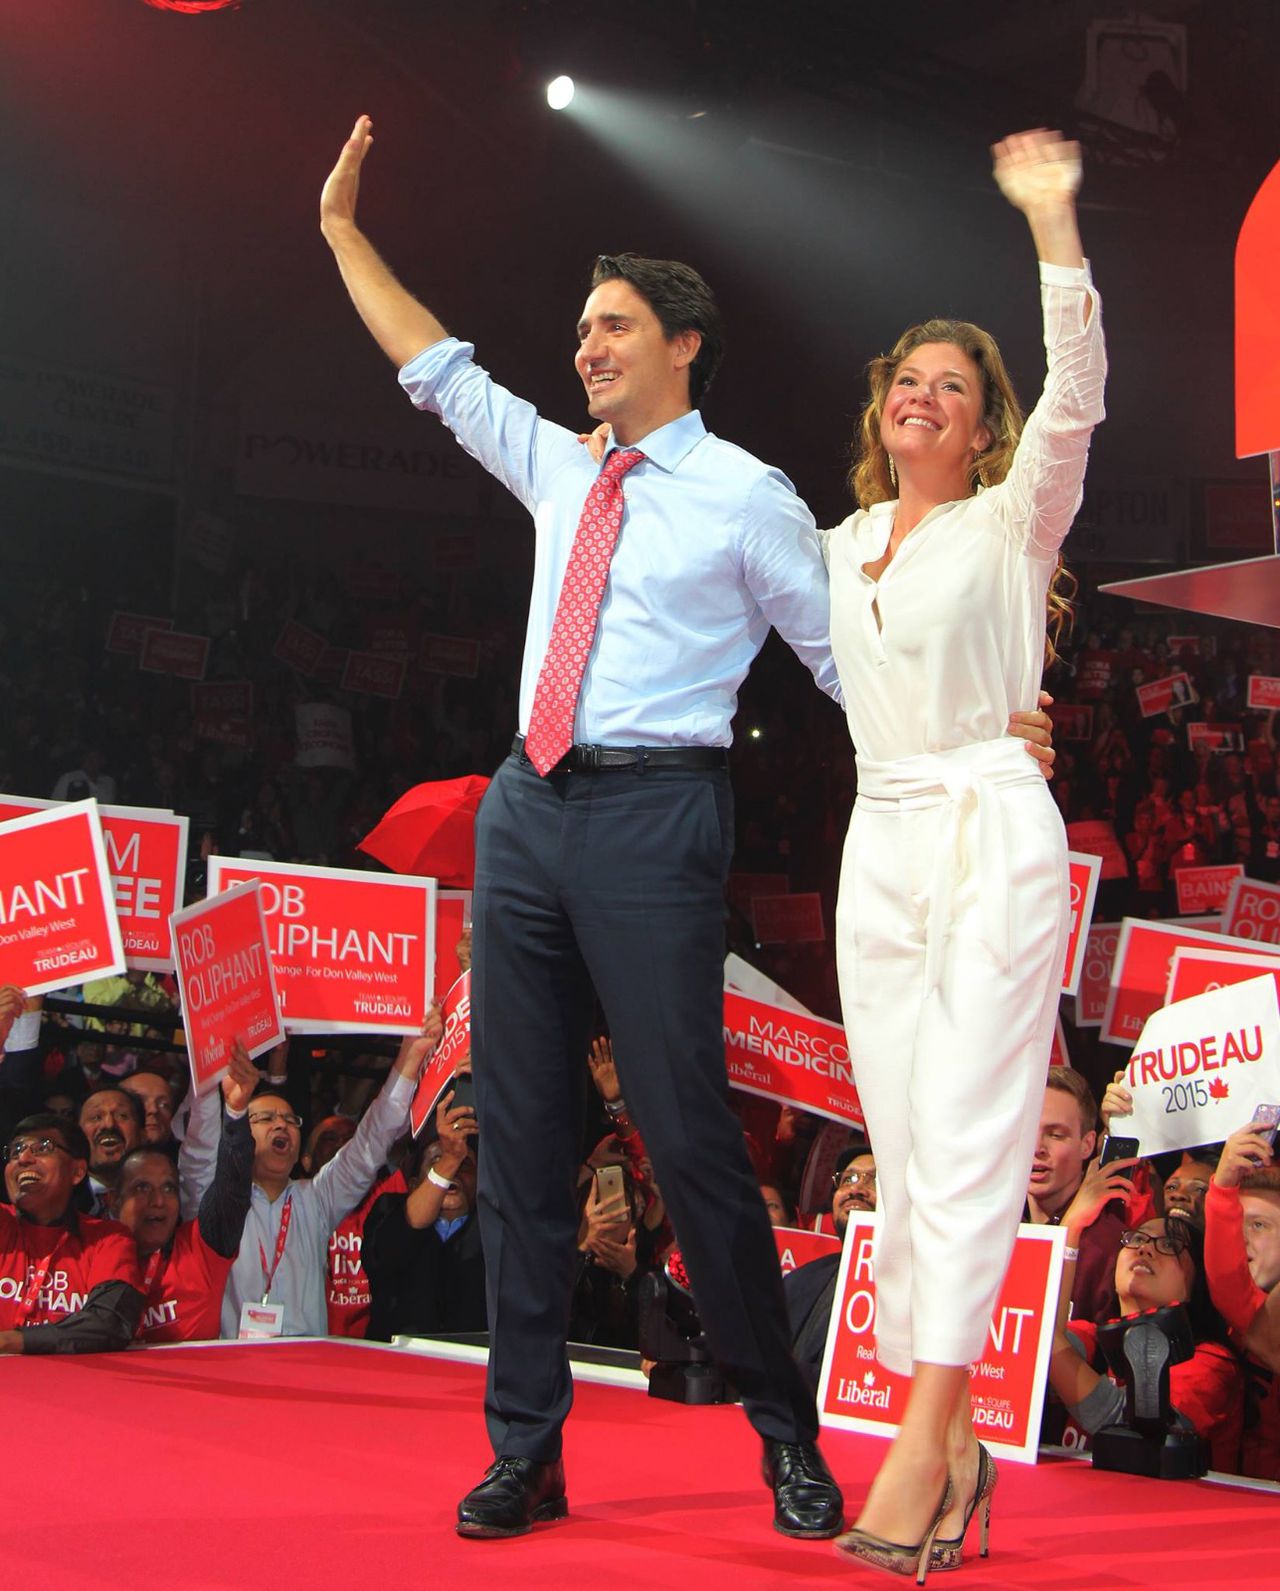 "Luego de muchas conversaciones profundas y difíciles, decidimos separarnos", dijo Trudeau en Instagram.